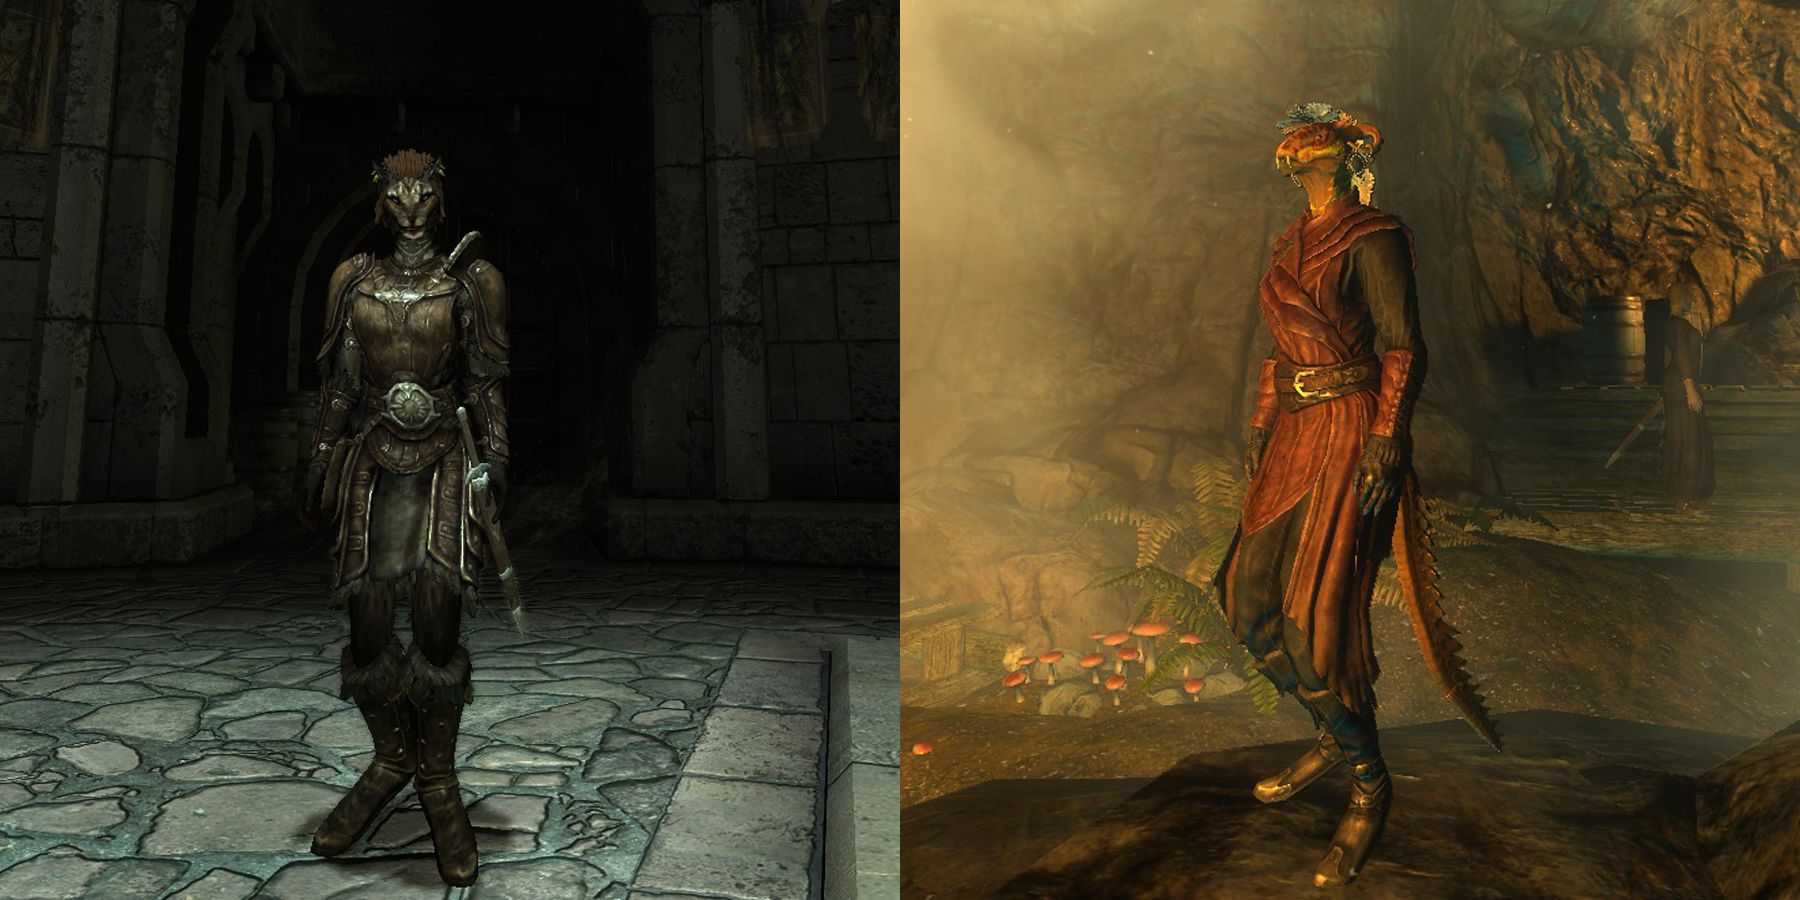 Мод Skyrim заставляет зверолюдей ходить на цыпочках, как в Morrowind